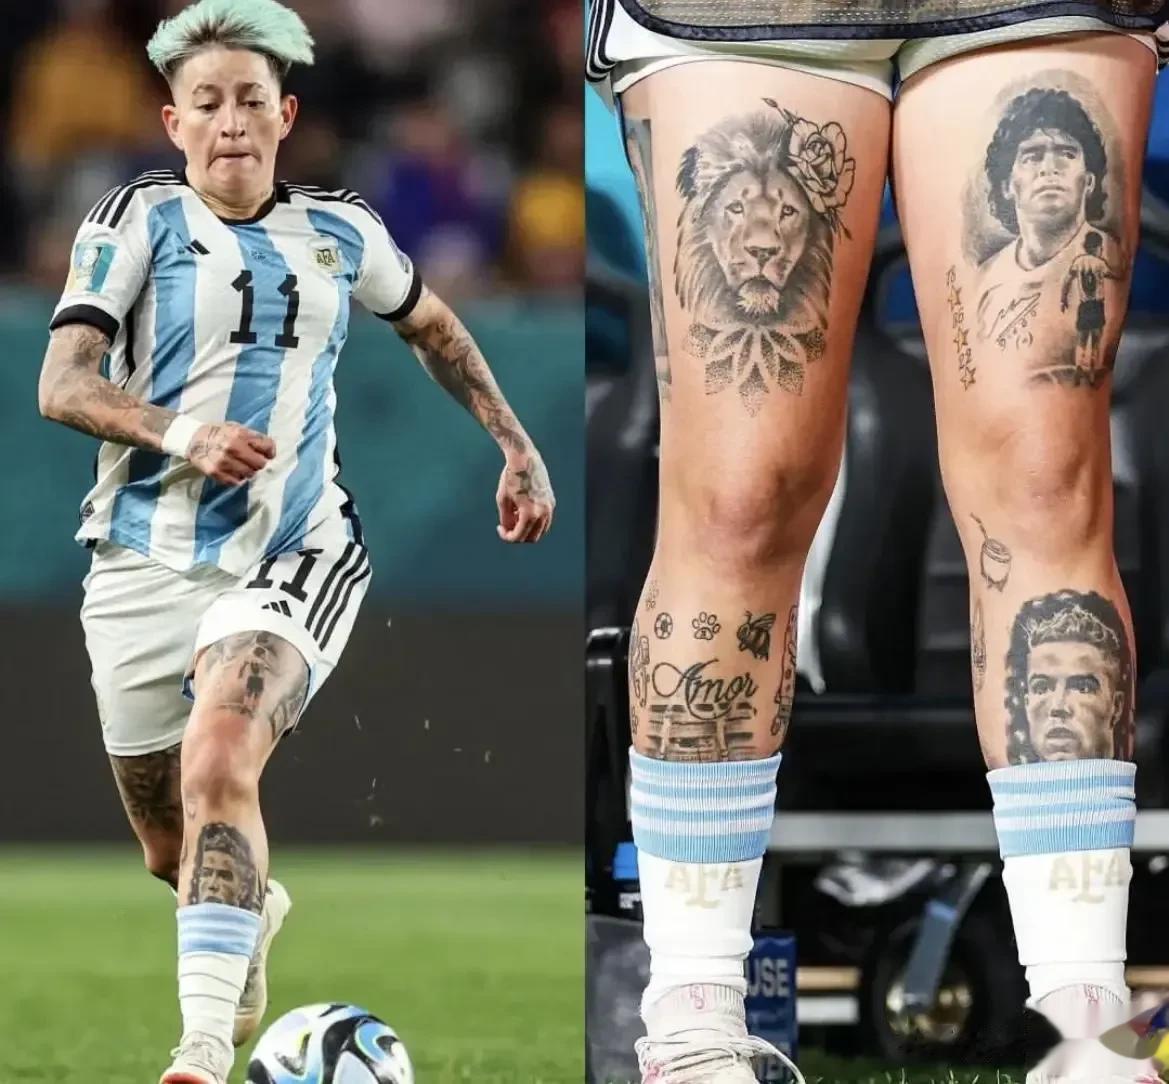 因C罗纹身遭批，阿根廷女足球员回应：爱C罗不等于讨厌梅西

7月25日消息，在今(2)